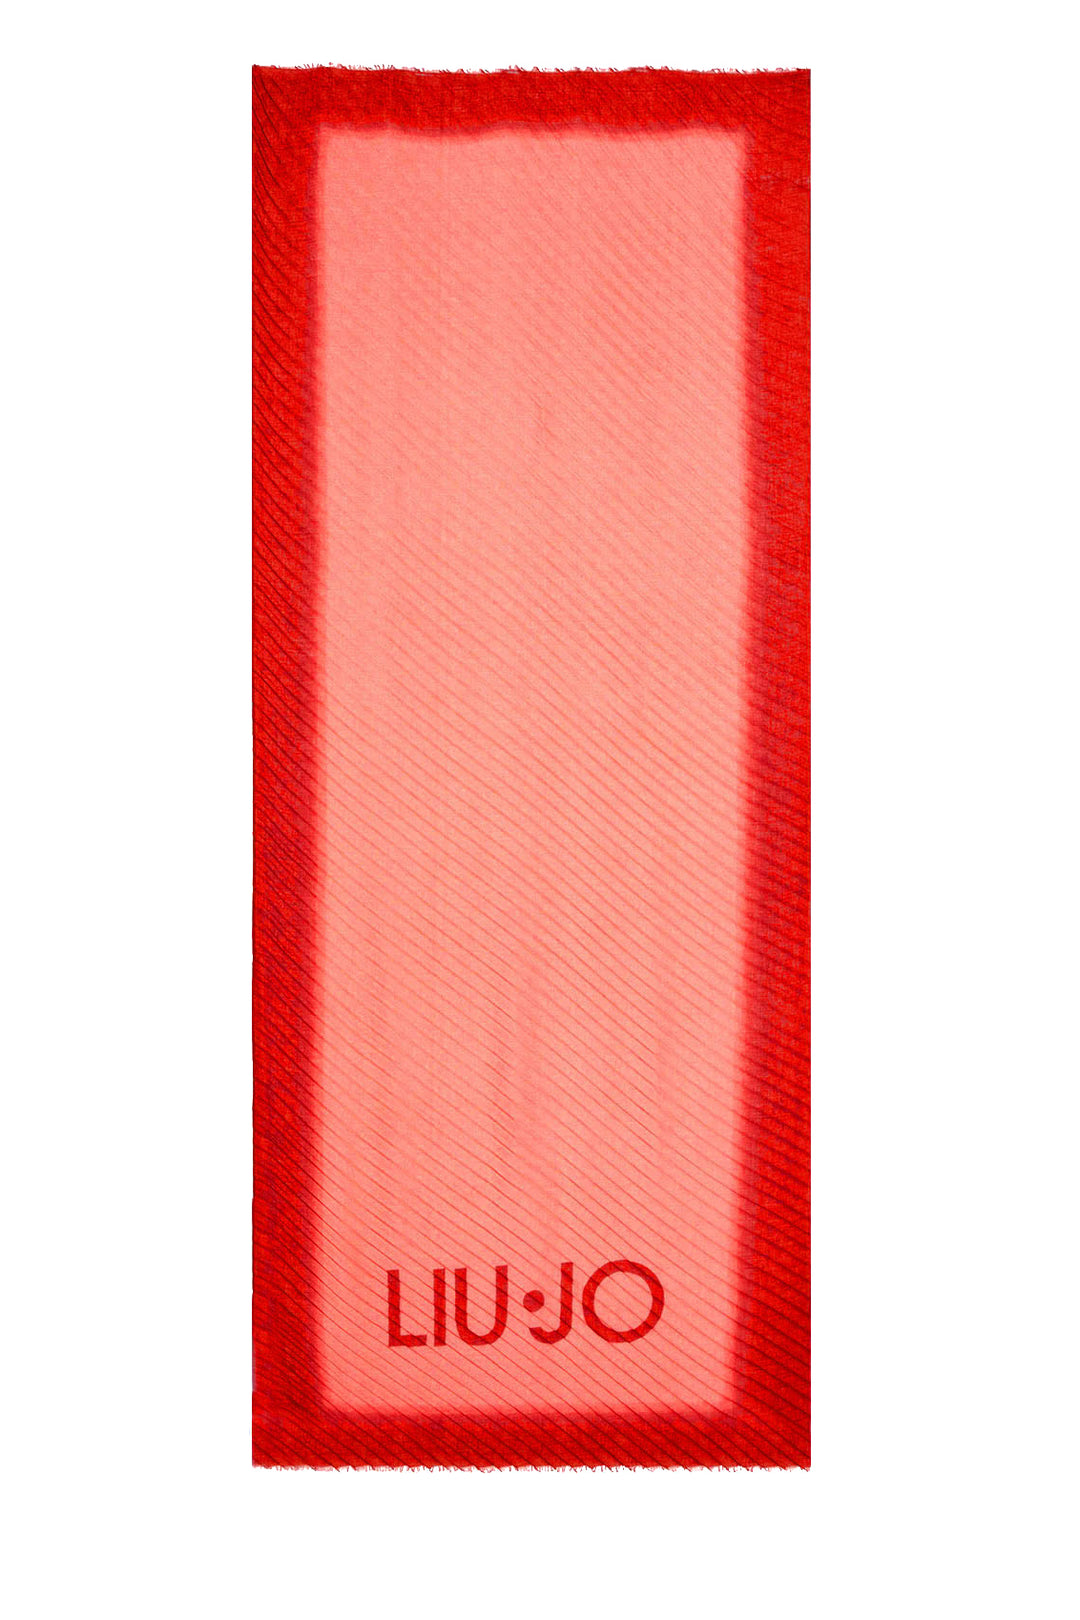 LIU JO Stola rossa ecosostenibile degradè con logo - Mancinelli 1954